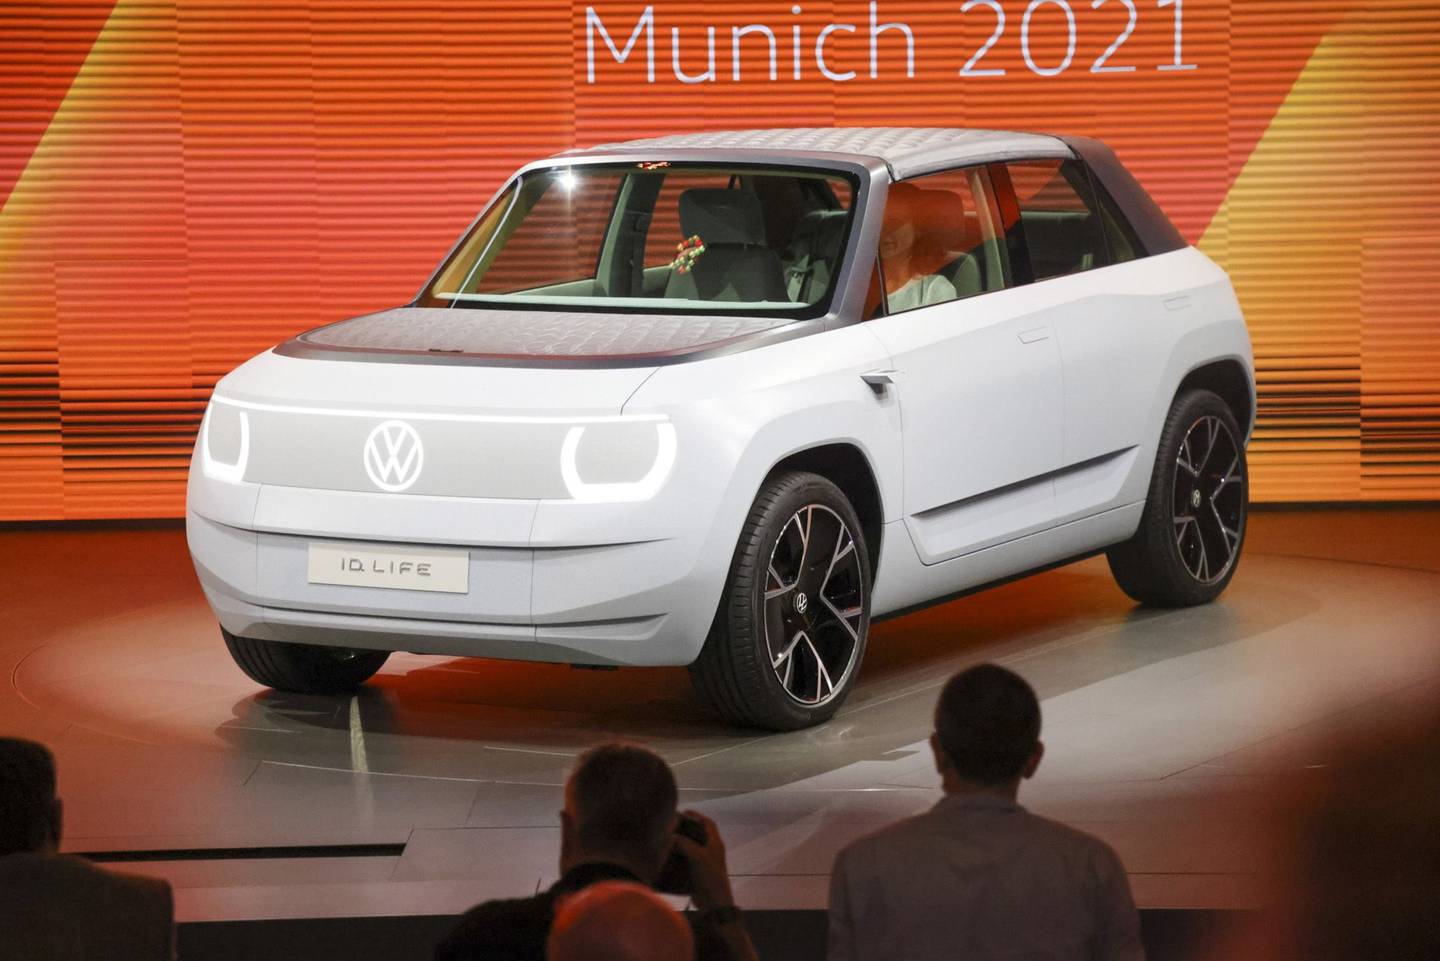 Si bien muchos autos eléctricos presentados en la feria de Munich entran en el segmento de lujo, el Volkswagen ID.LIFE muestra cómo se verían los autos eléctricos de nivel de entrada en 10 años. “El concepto ofrece una vista previa de un modelo de identificación en el segmento de automóviles pequeños que lanzaremos en 2025, con un precio de alrededor de 20.000 euros [US$23.600]. Esto significa que estamos haciendo que la movilidad eléctrica sea accesible para aún más personas “, dijo Ralf Brandstaetter, CEO de la marca Volkswagen. Fotógrafo: Alex Kraus / Bloombergdfd